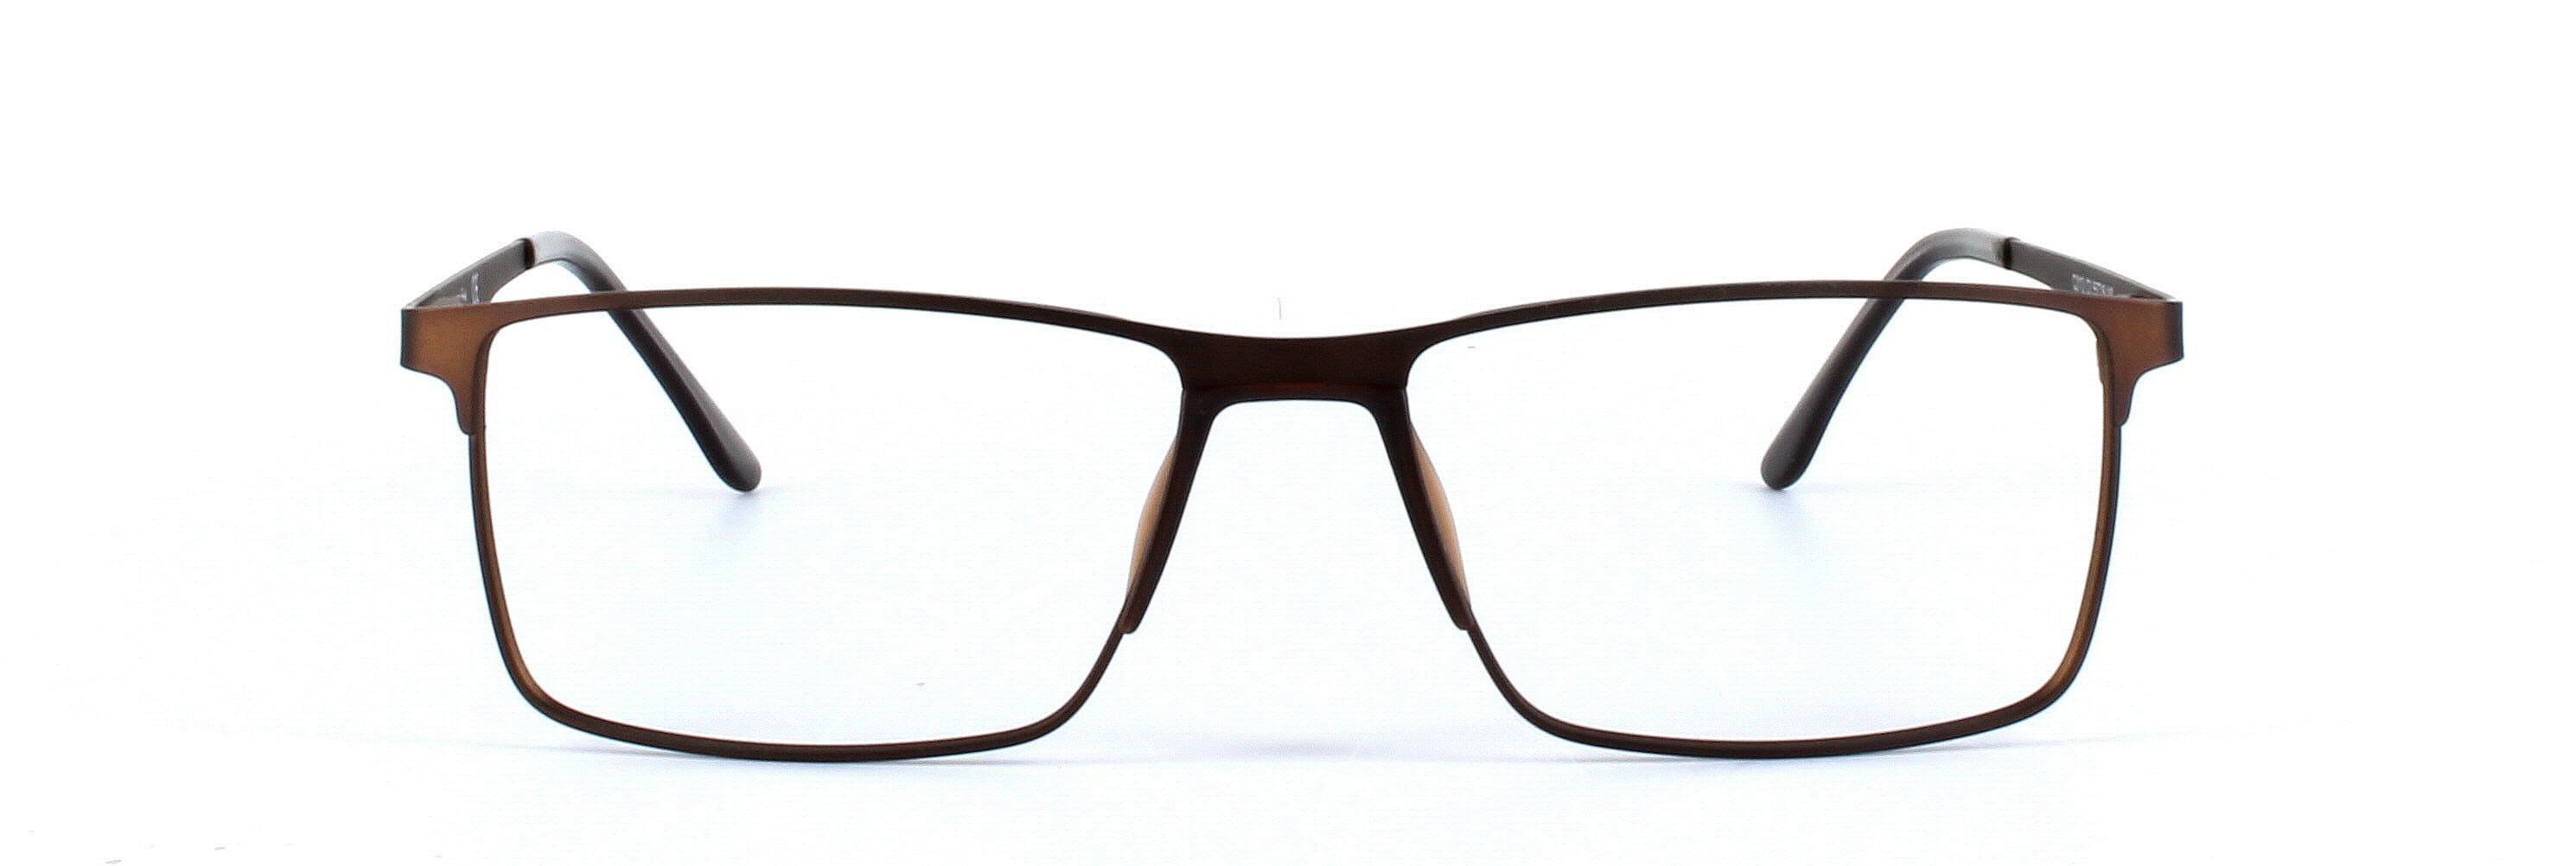 Burnaby Bronze Full Rim Rectangular Metal Glasses - Image View 5